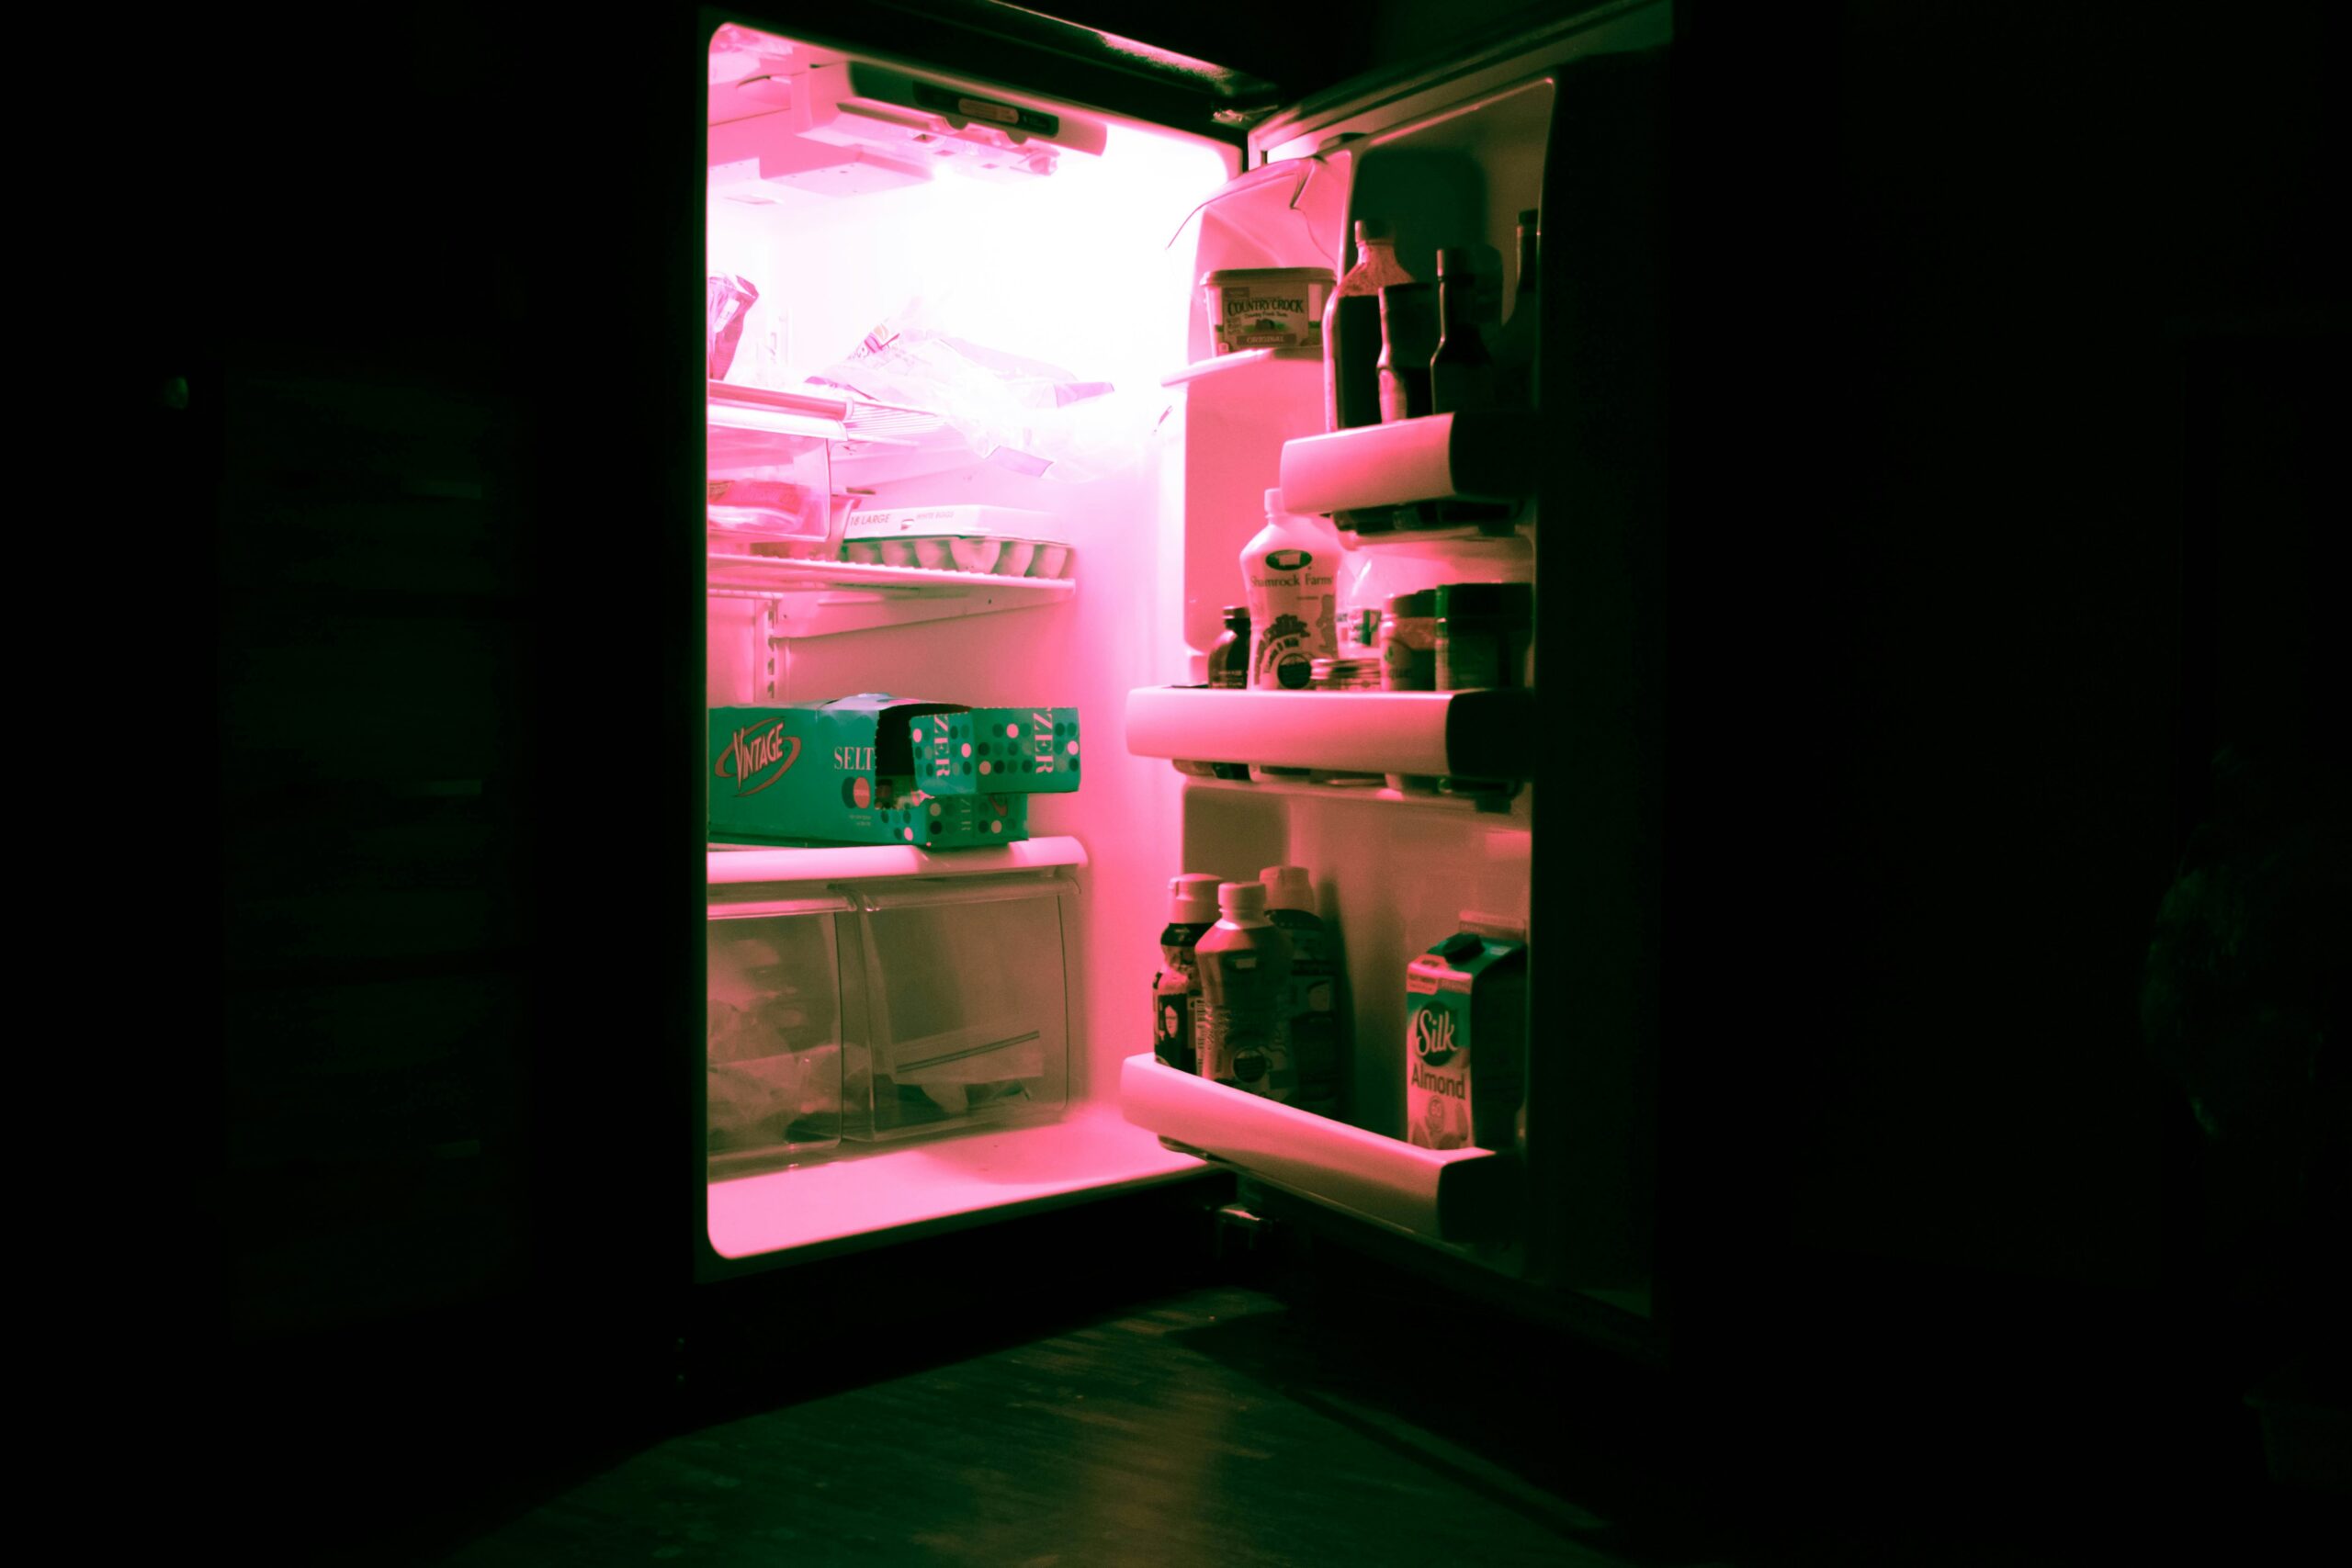 Best Garage Refrigerators